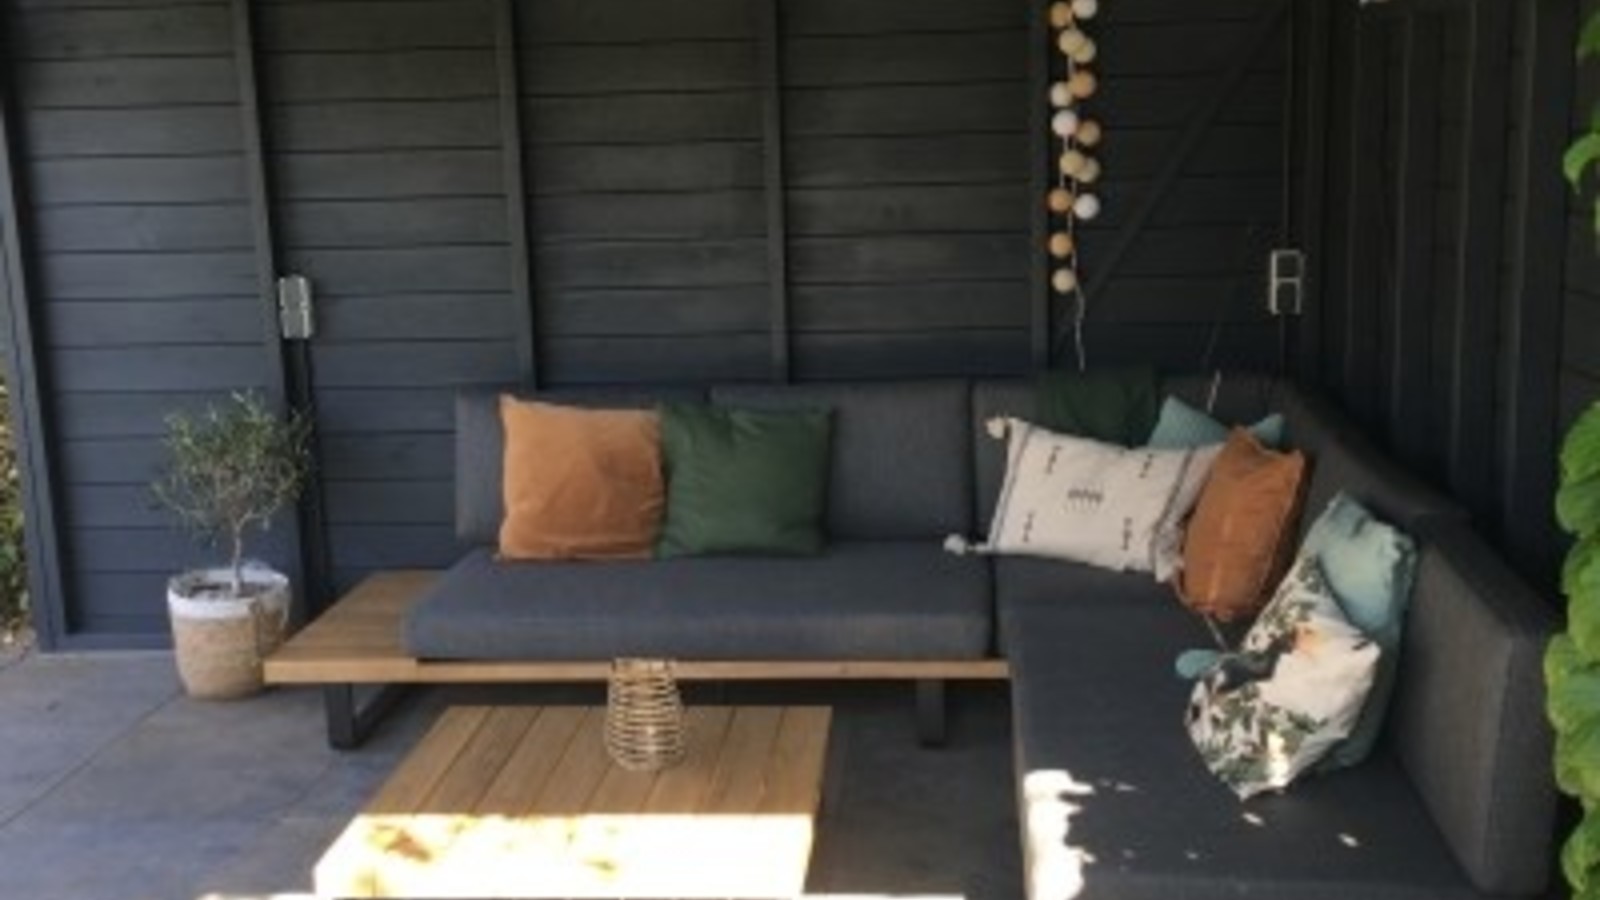 Draaien Tektonisch Onbemand Een mooie loungeset kopen voor in je tuin - AVH Outdoor Tuinmeubelen